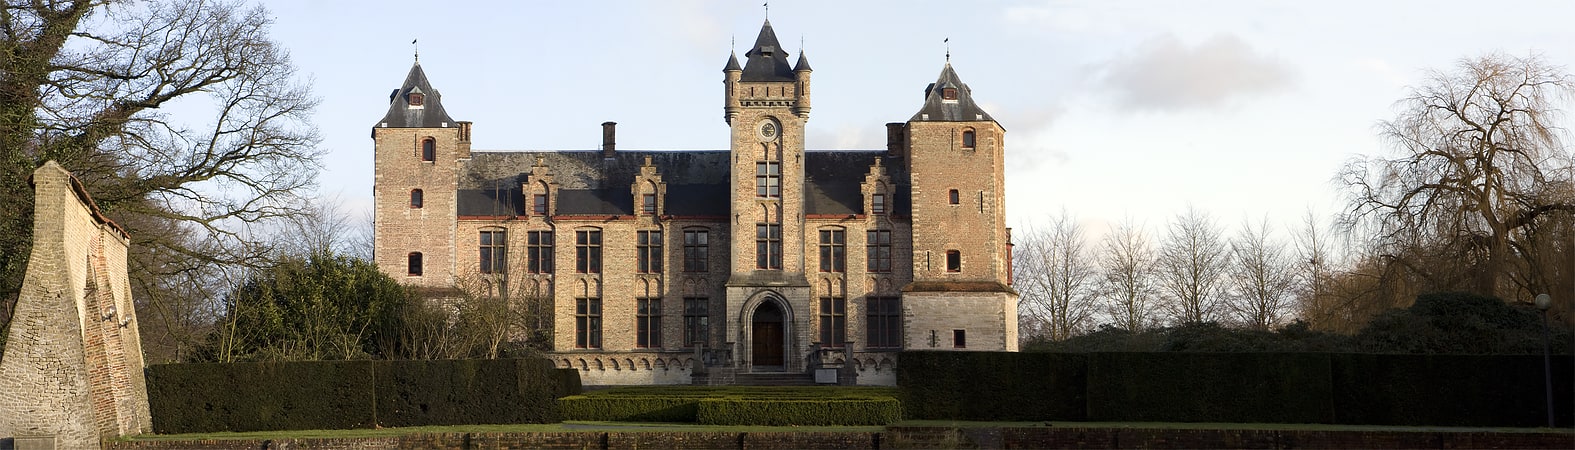 Castle in Bruges, Belgium